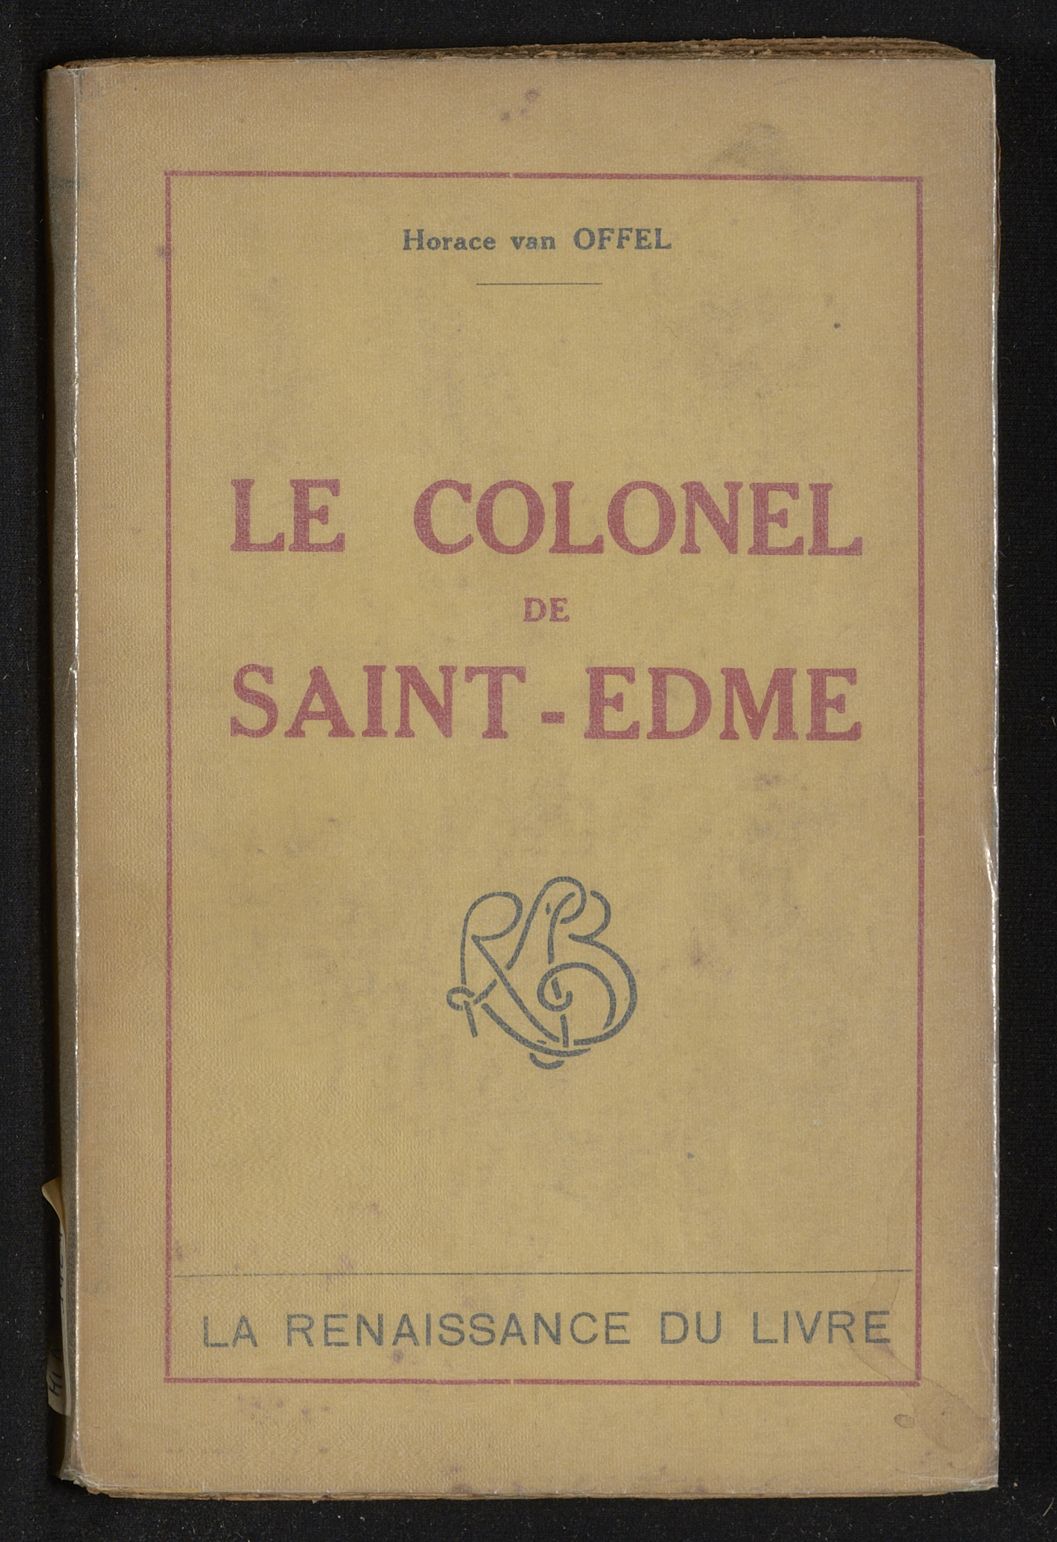 Le colonel de Saint-Edme